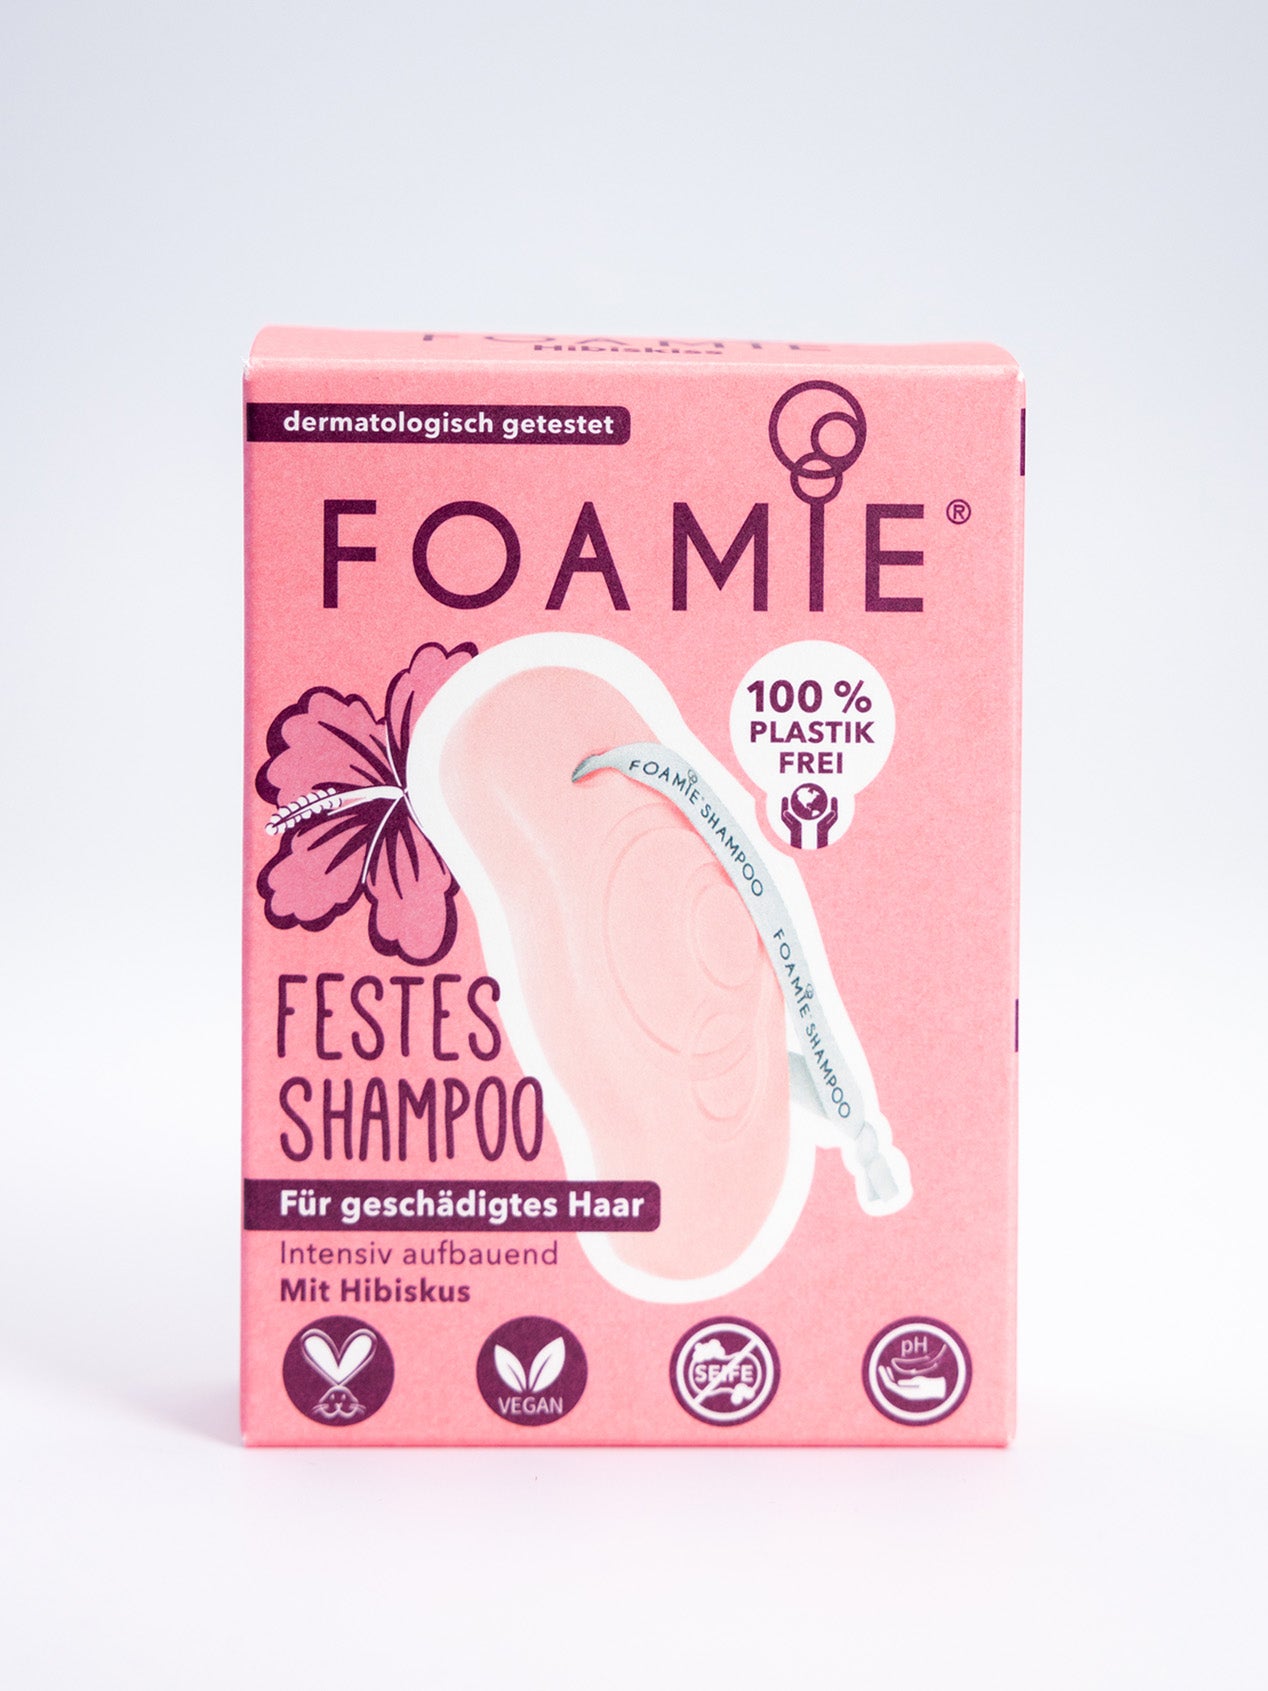 Foamie Festes (80 Hibiskiss Geschädigtes Haar g) Shampoo